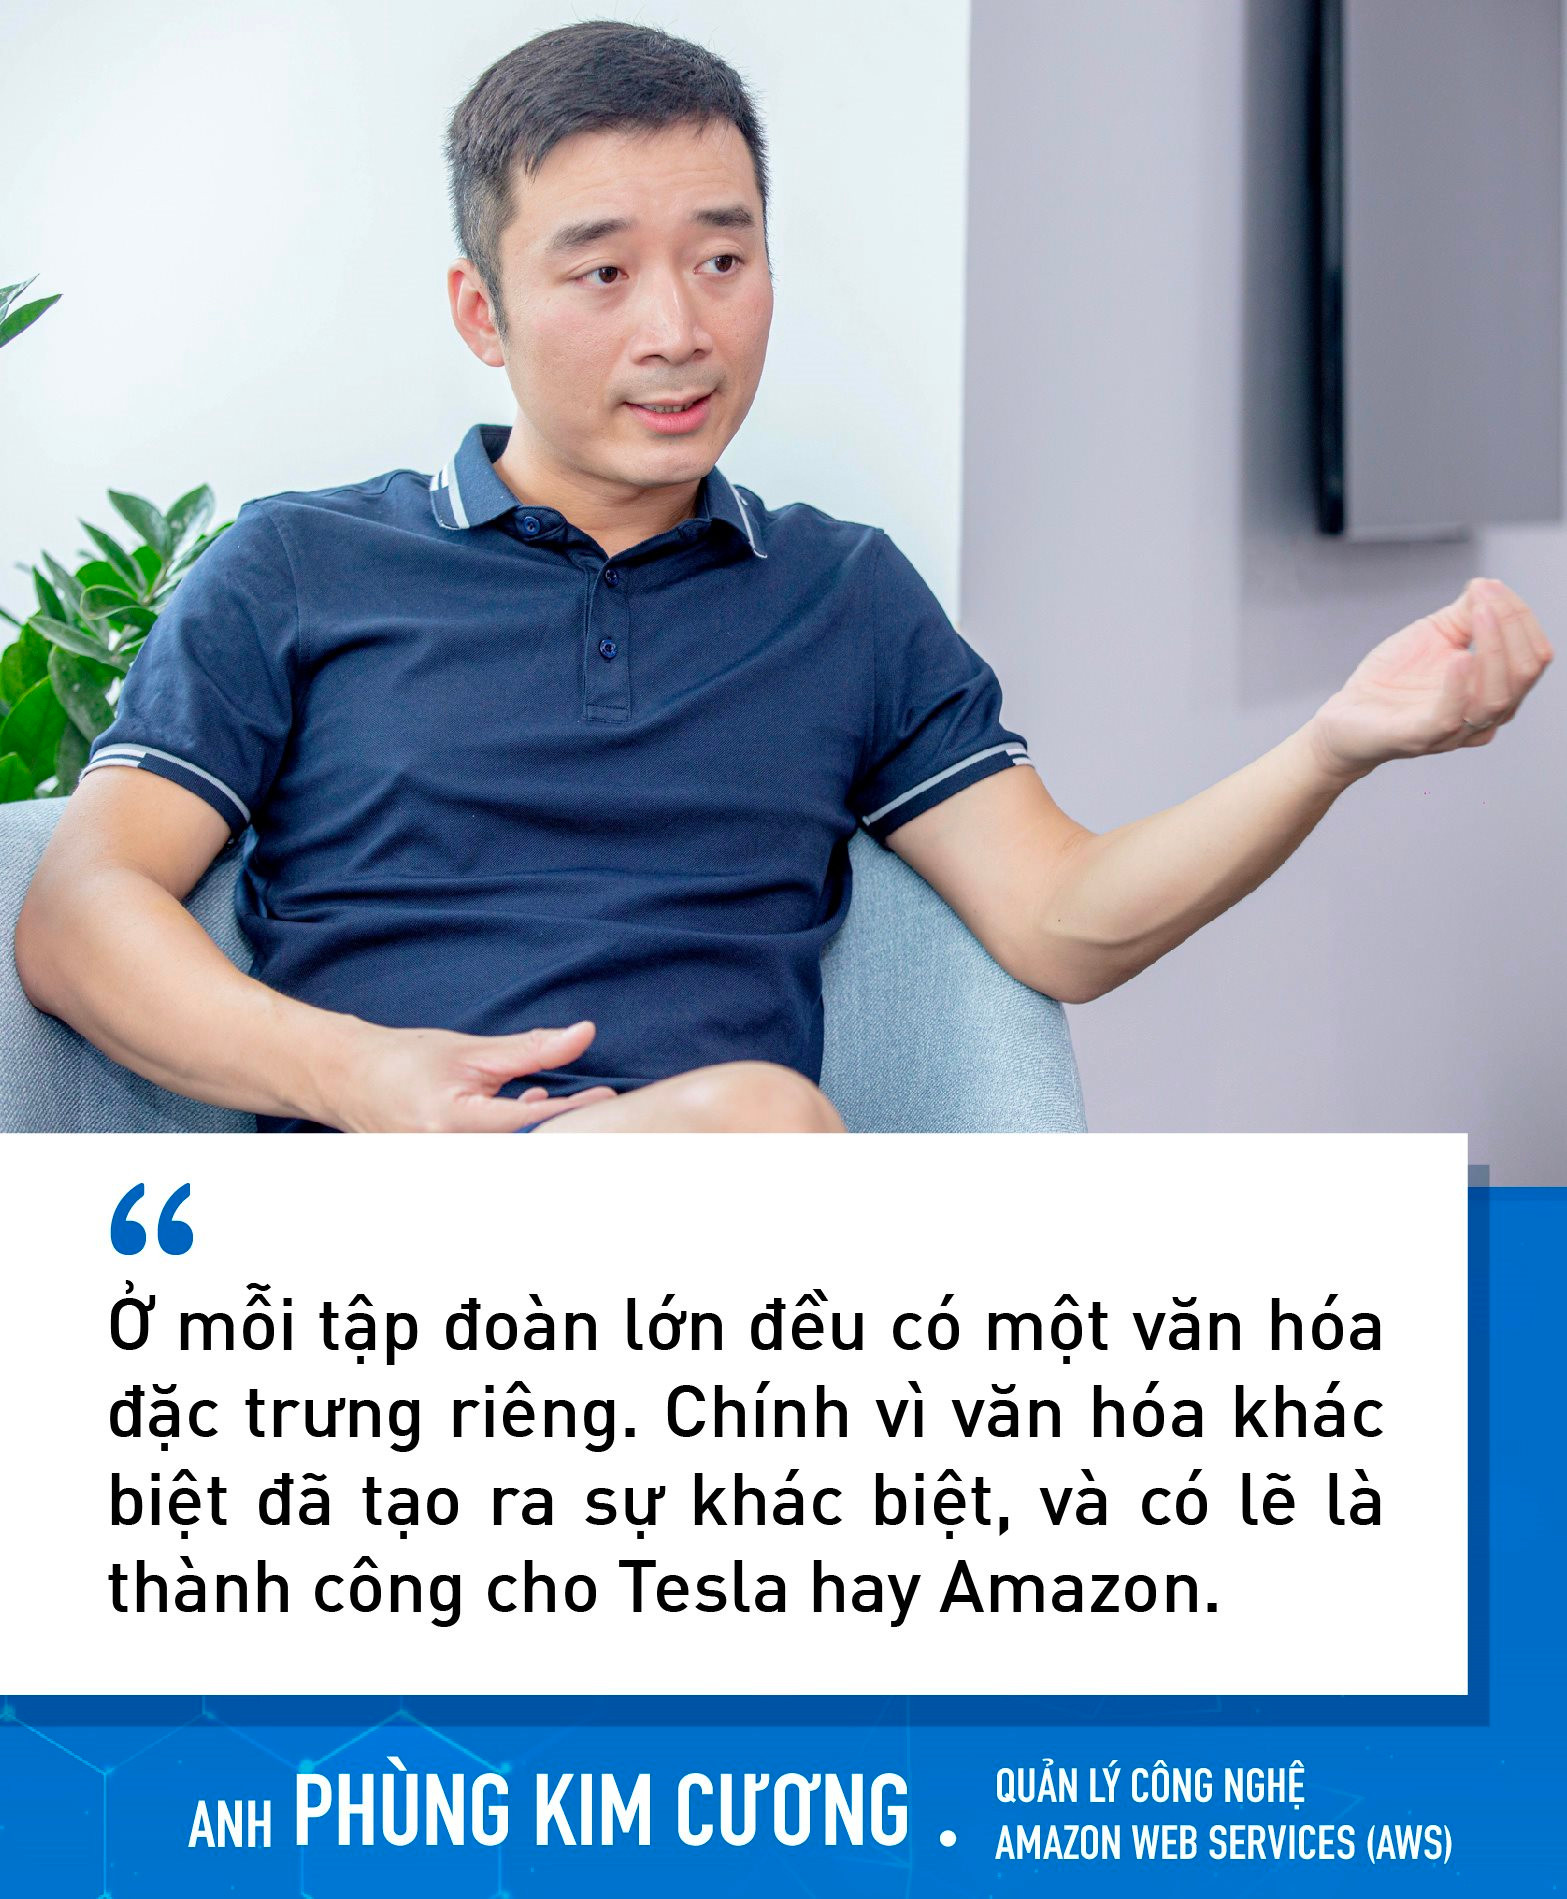 Chuyên gia công nghệ Việt làm cho Tesla, Amazon chỉ ra những yếu tố sẽ giúp NIC trở thành Silicon Valley của Việt Nam trong tương lai - Ảnh 4.